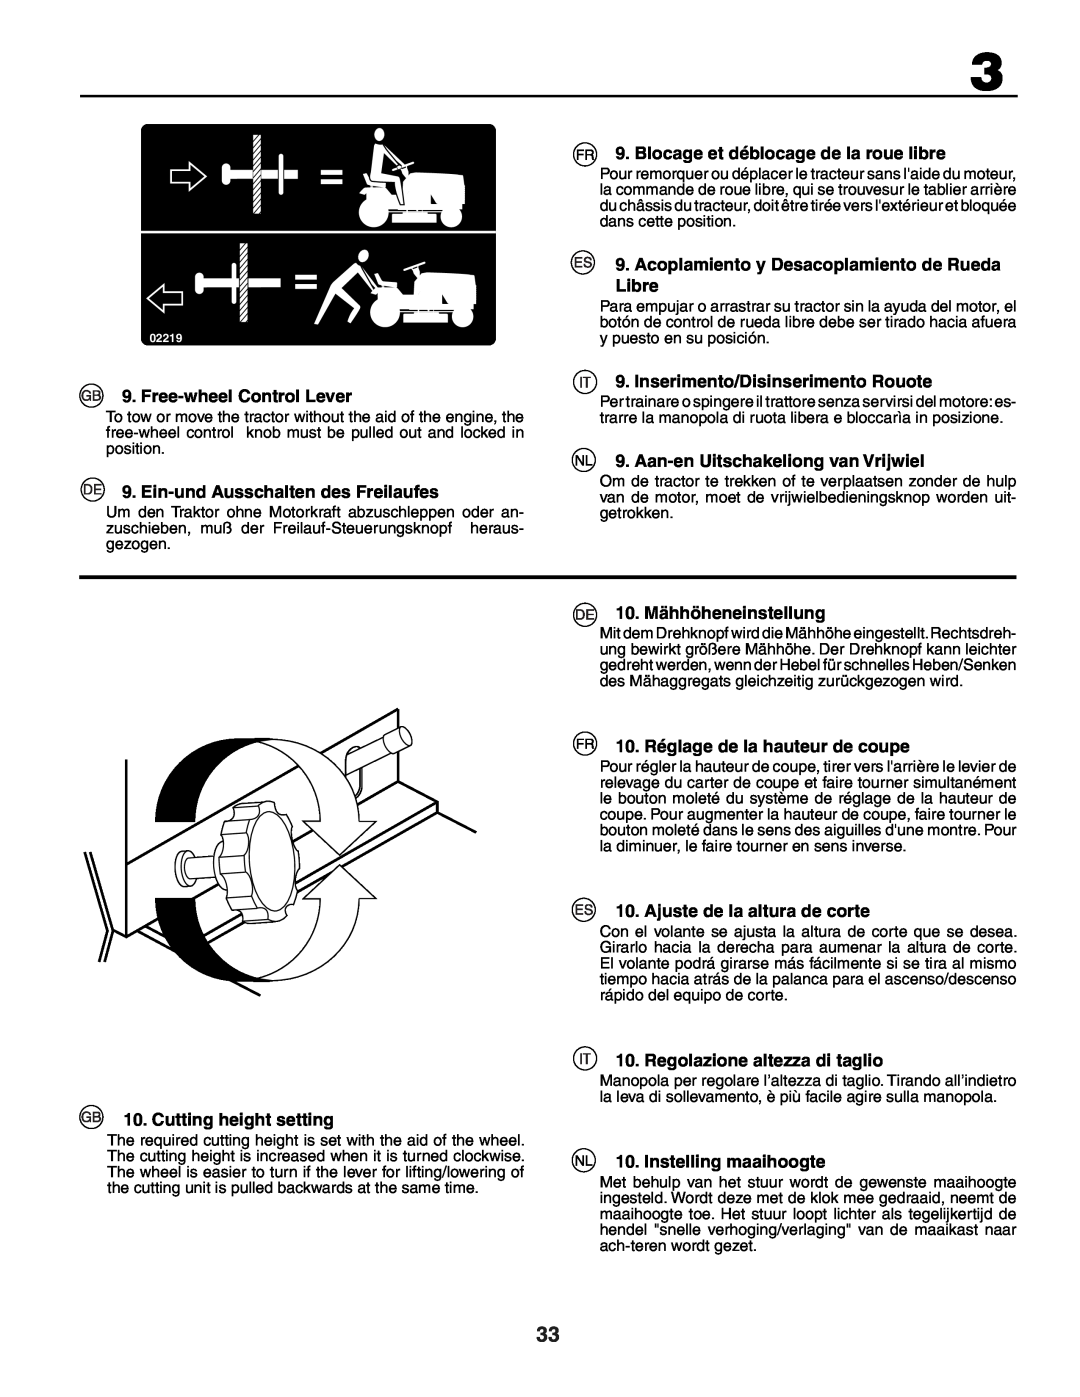 Husqvarna YTH150XP instruction manual Blocage et déblocage de la roue libre, Acoplamiento y Desacoplamiento de Rueda Libre 